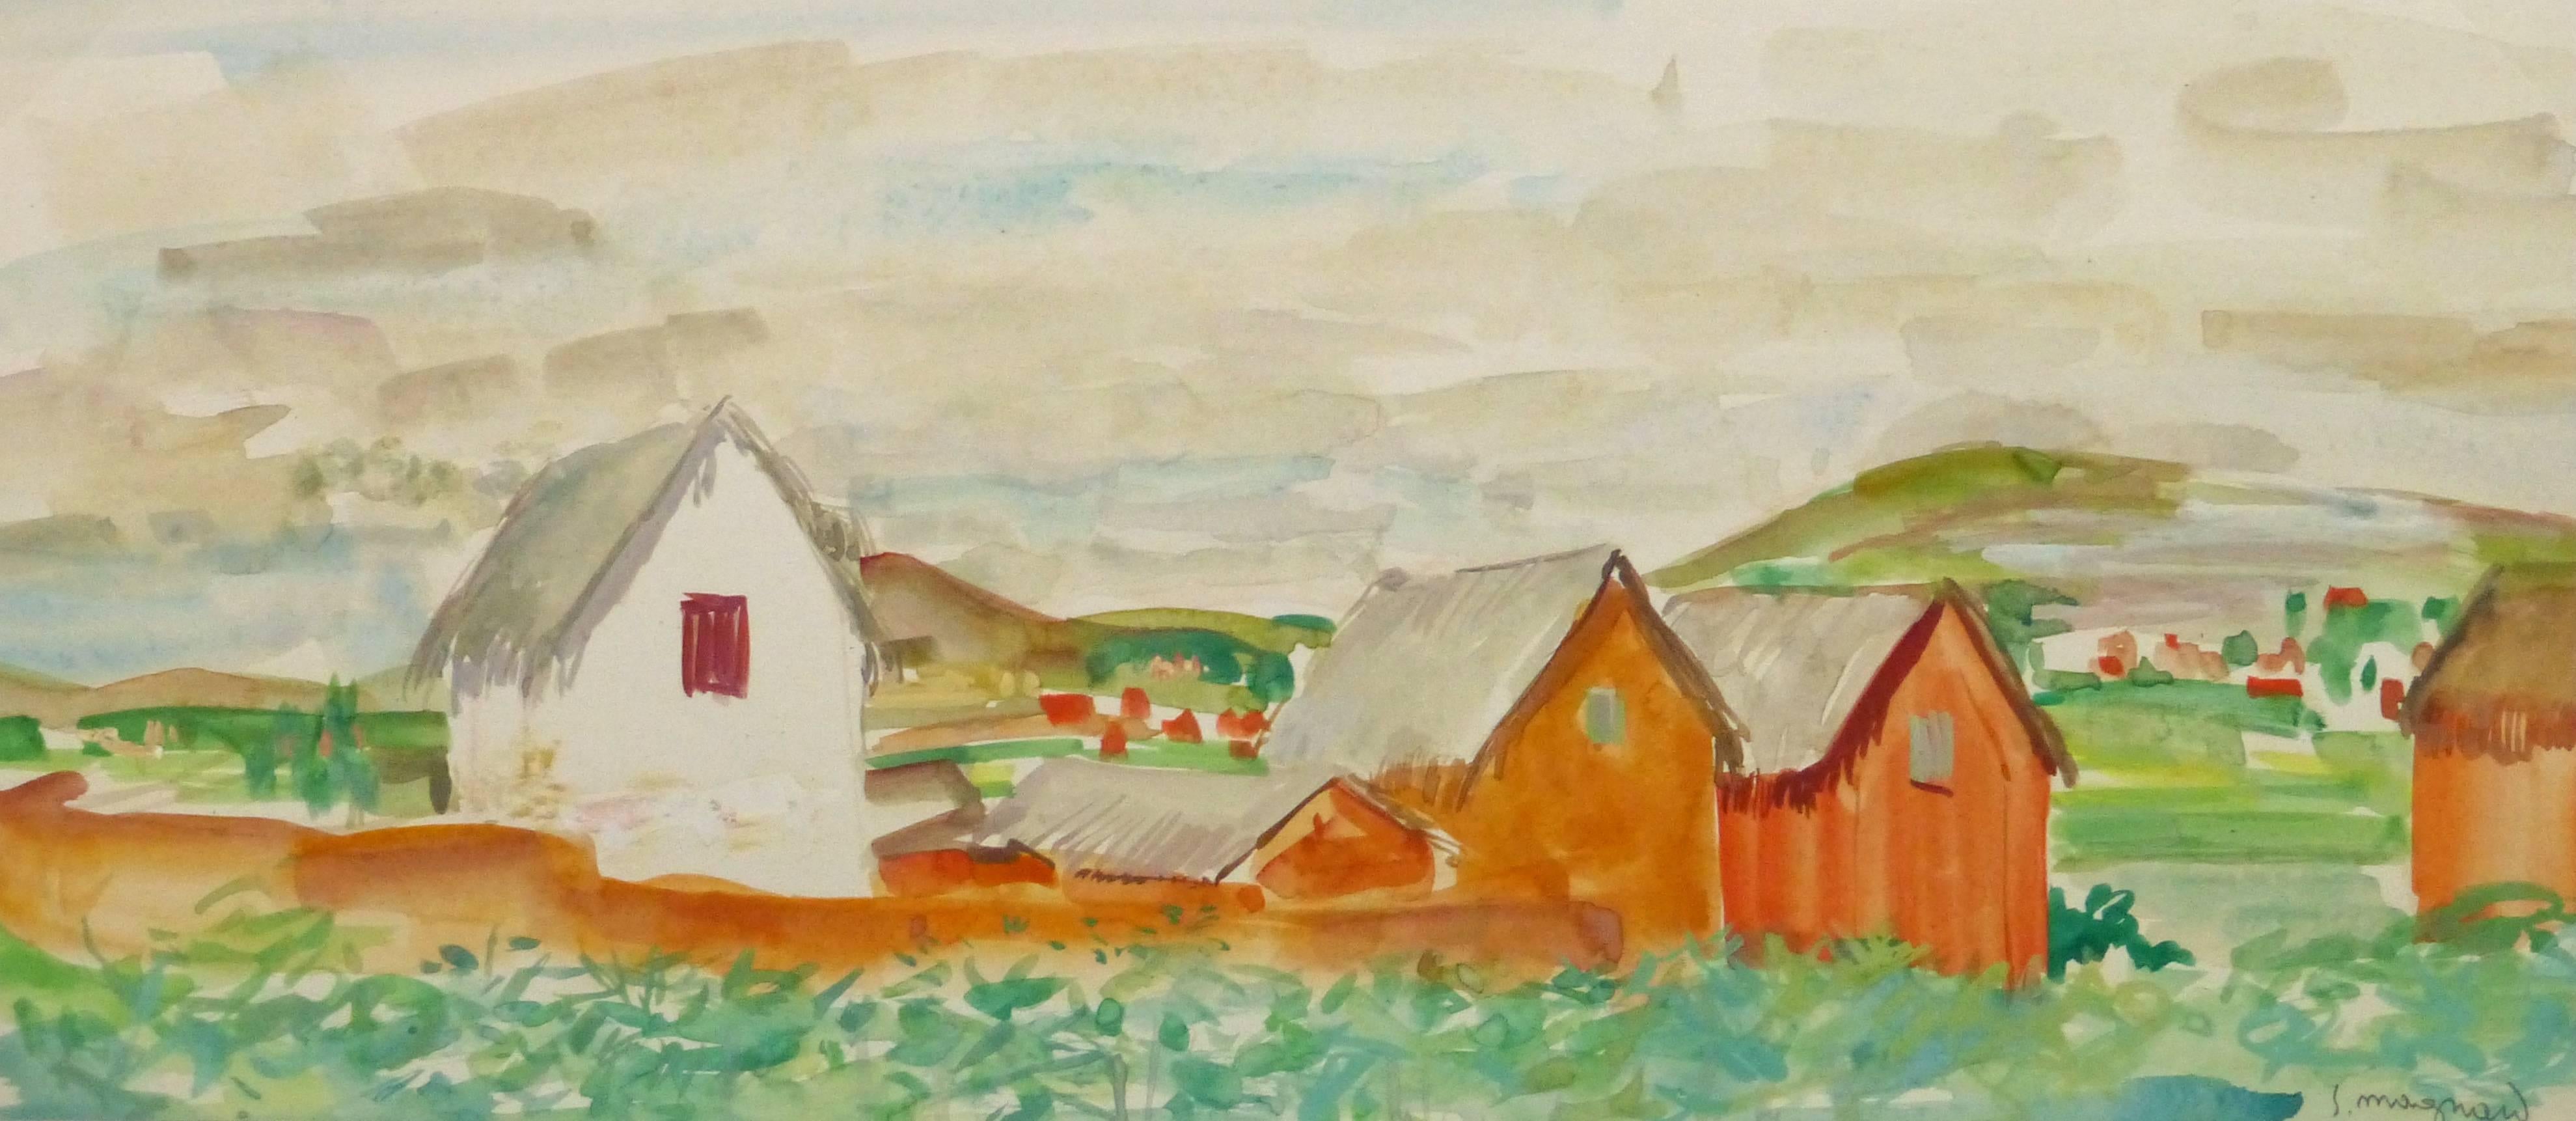 Stephane Magnard Landscape Art - Vintage French Watercolor Landscape - Rural Outskirts